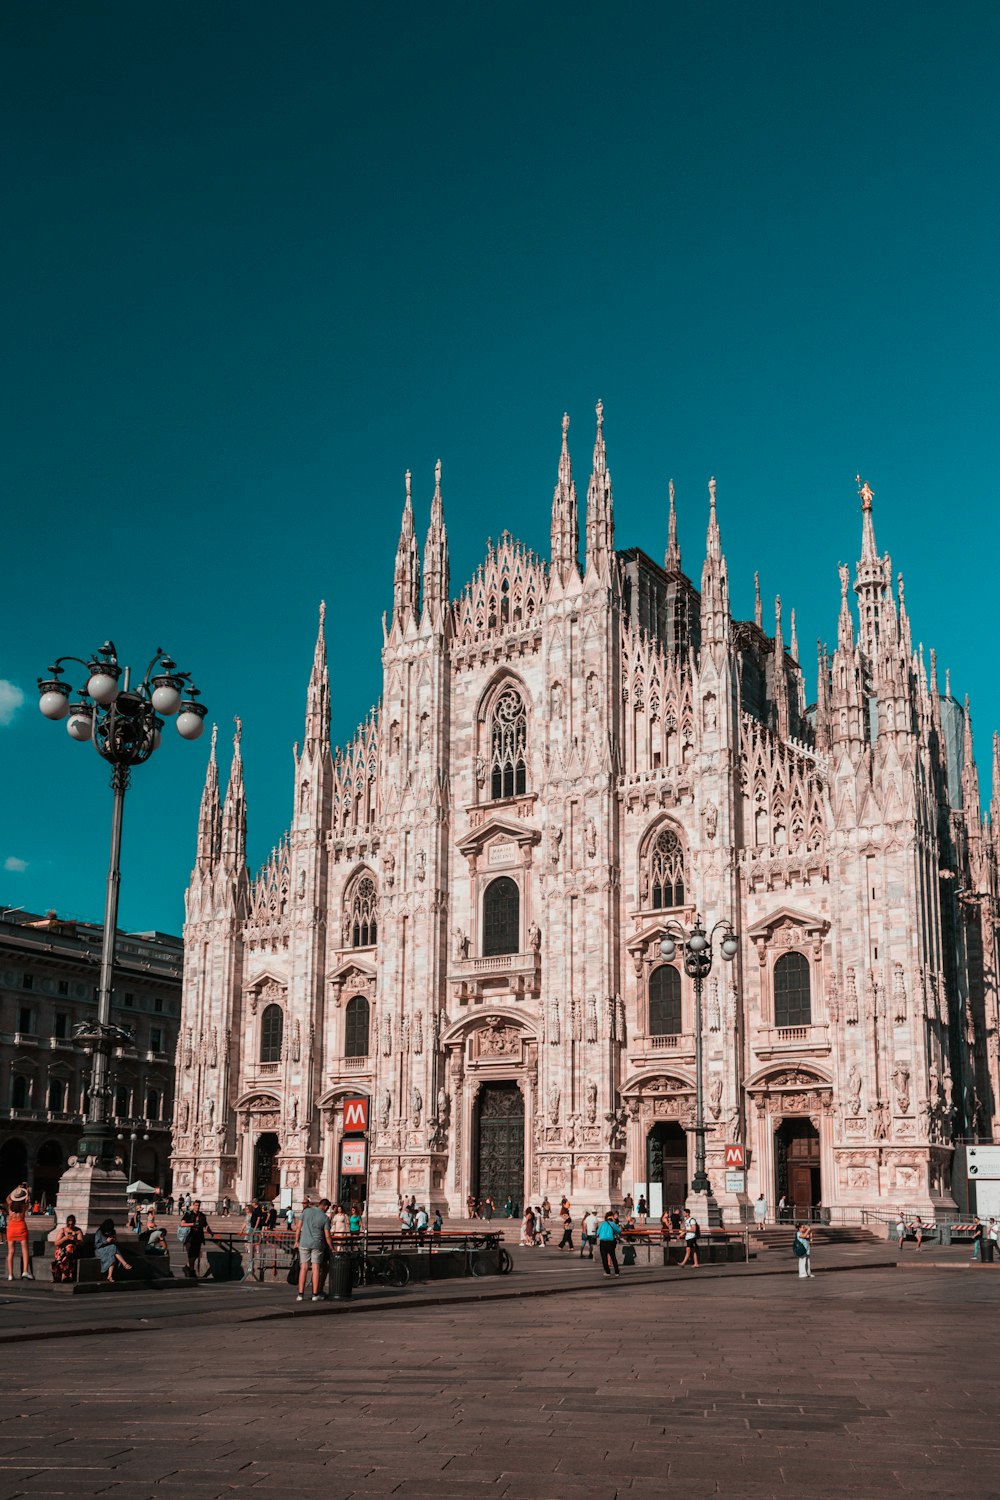 ミラノ大聖堂を背景にした大きな石造りの建物